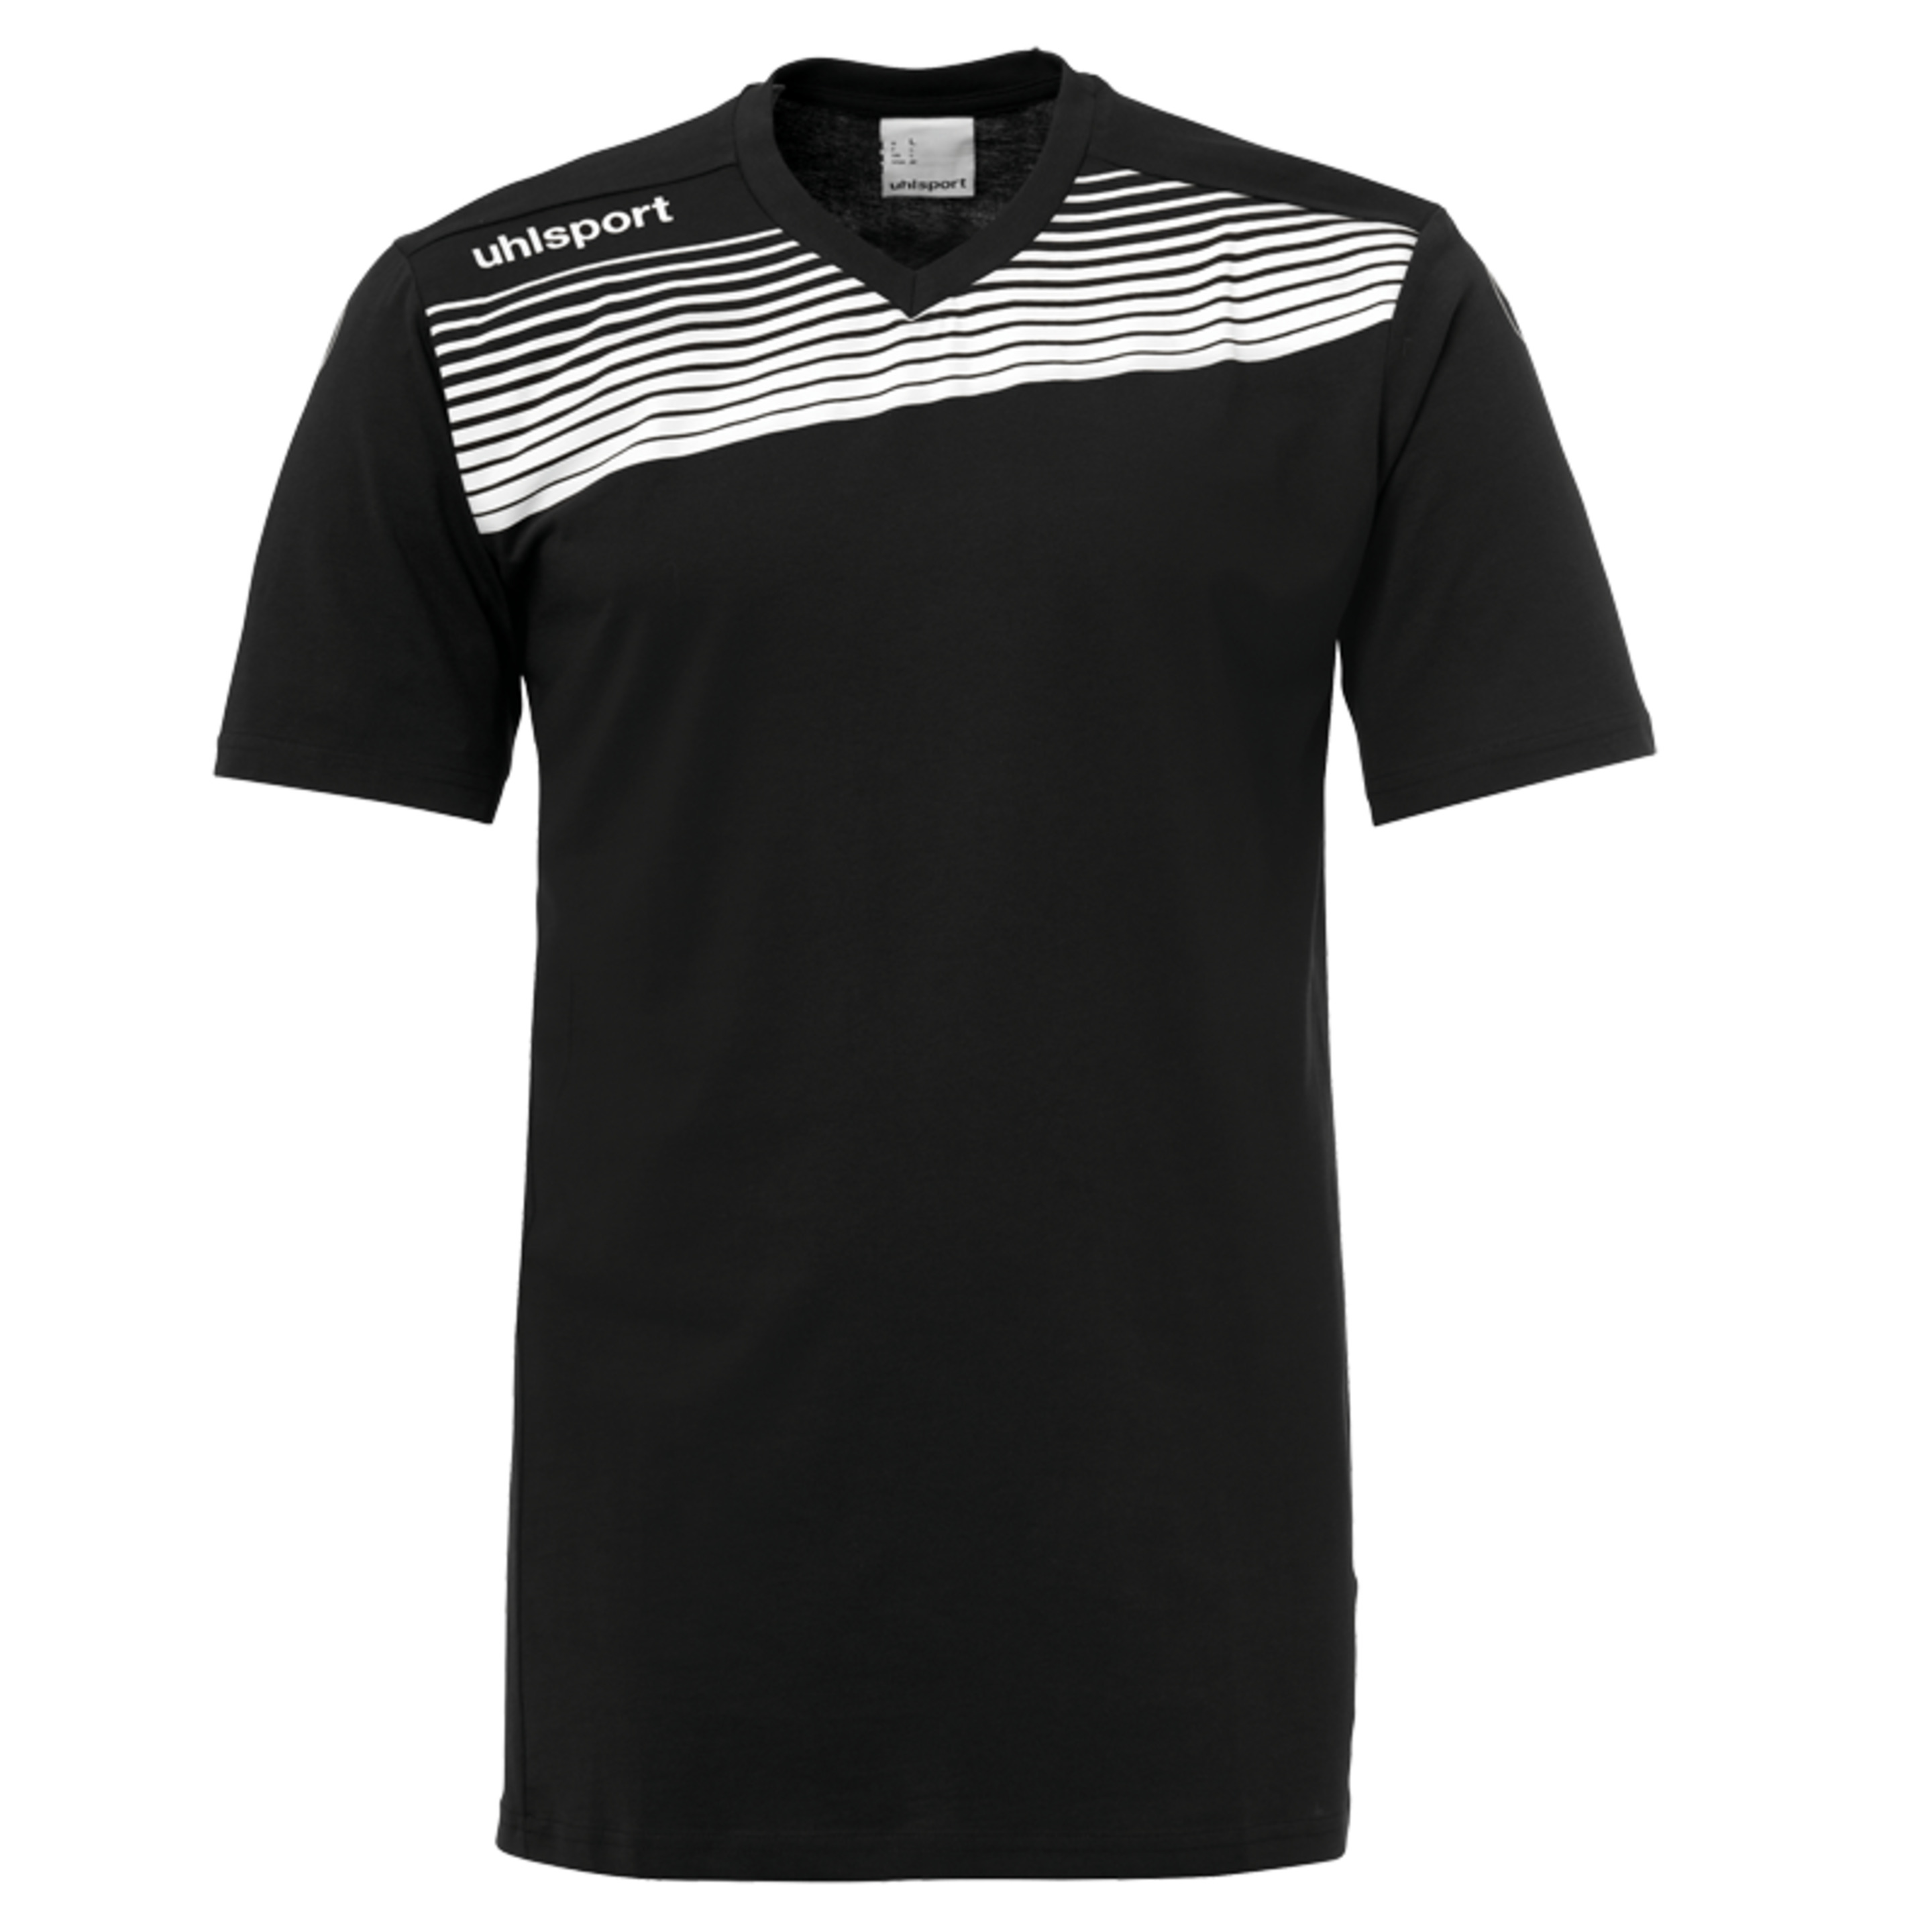 Liga 2.0 Camiseta De Entrenamiento Negro/blanco Uhlsport - negro-blanco - 